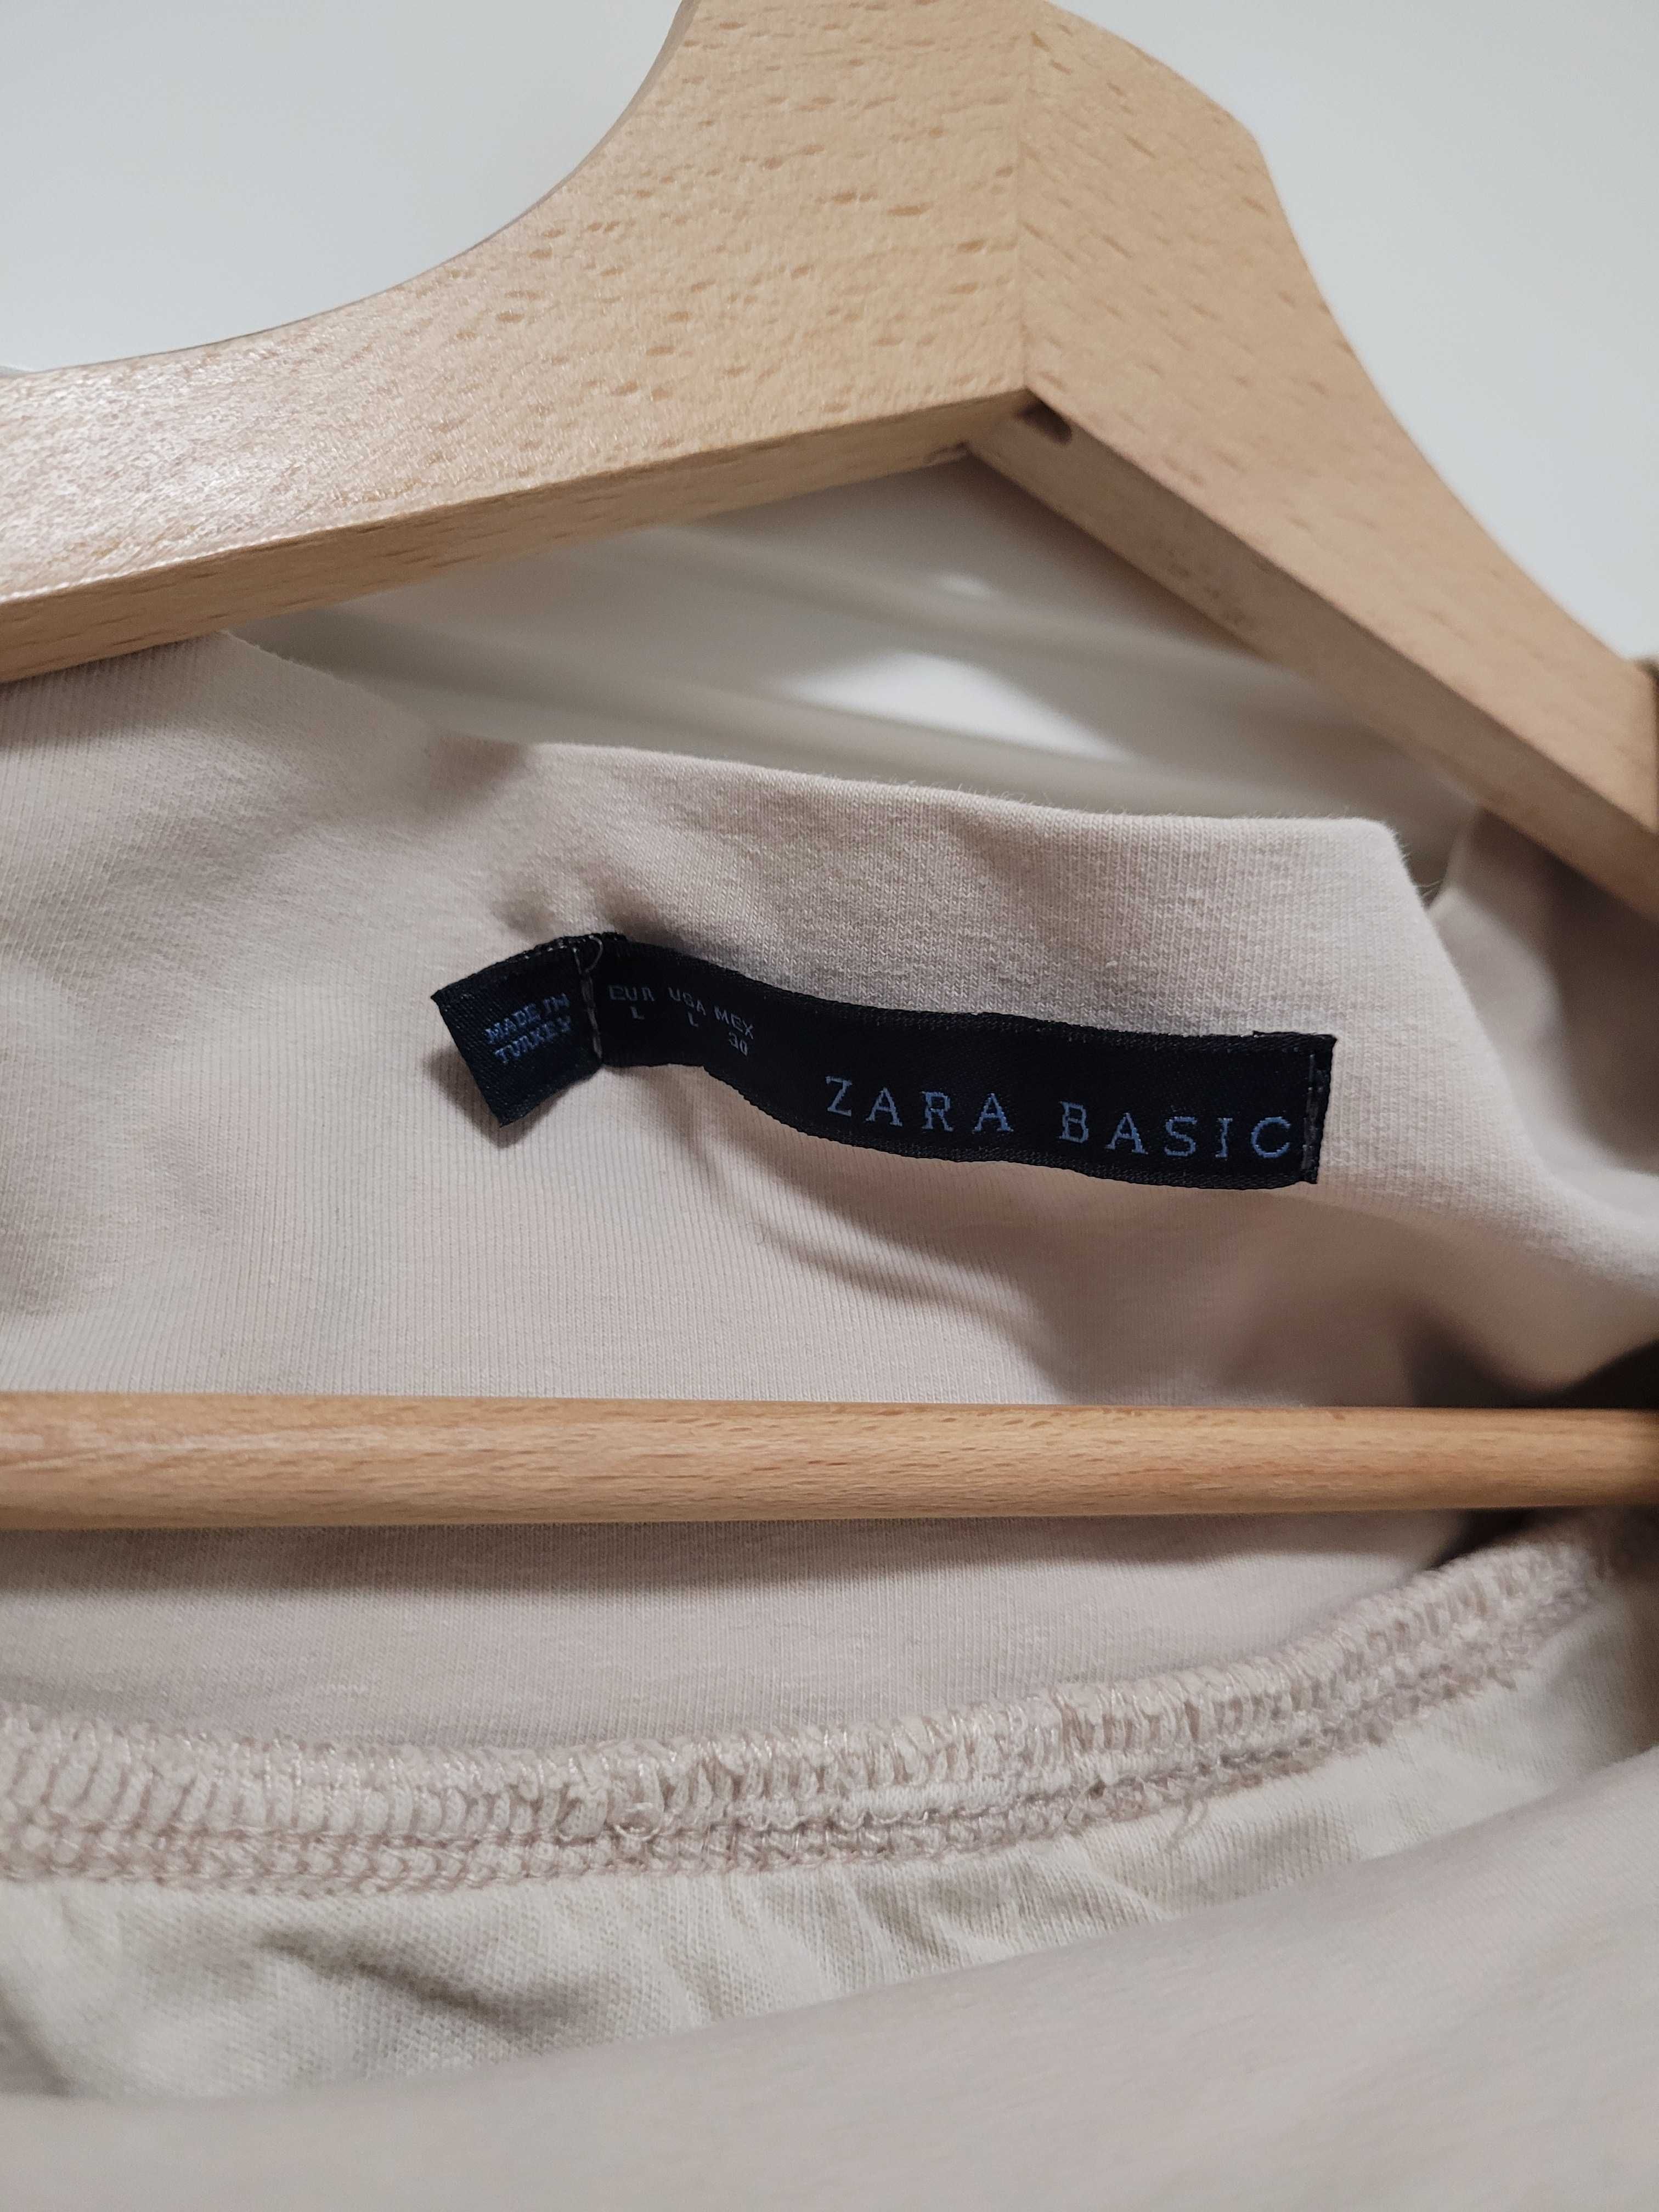 Spódnica Zara bawełniana płócienna beż